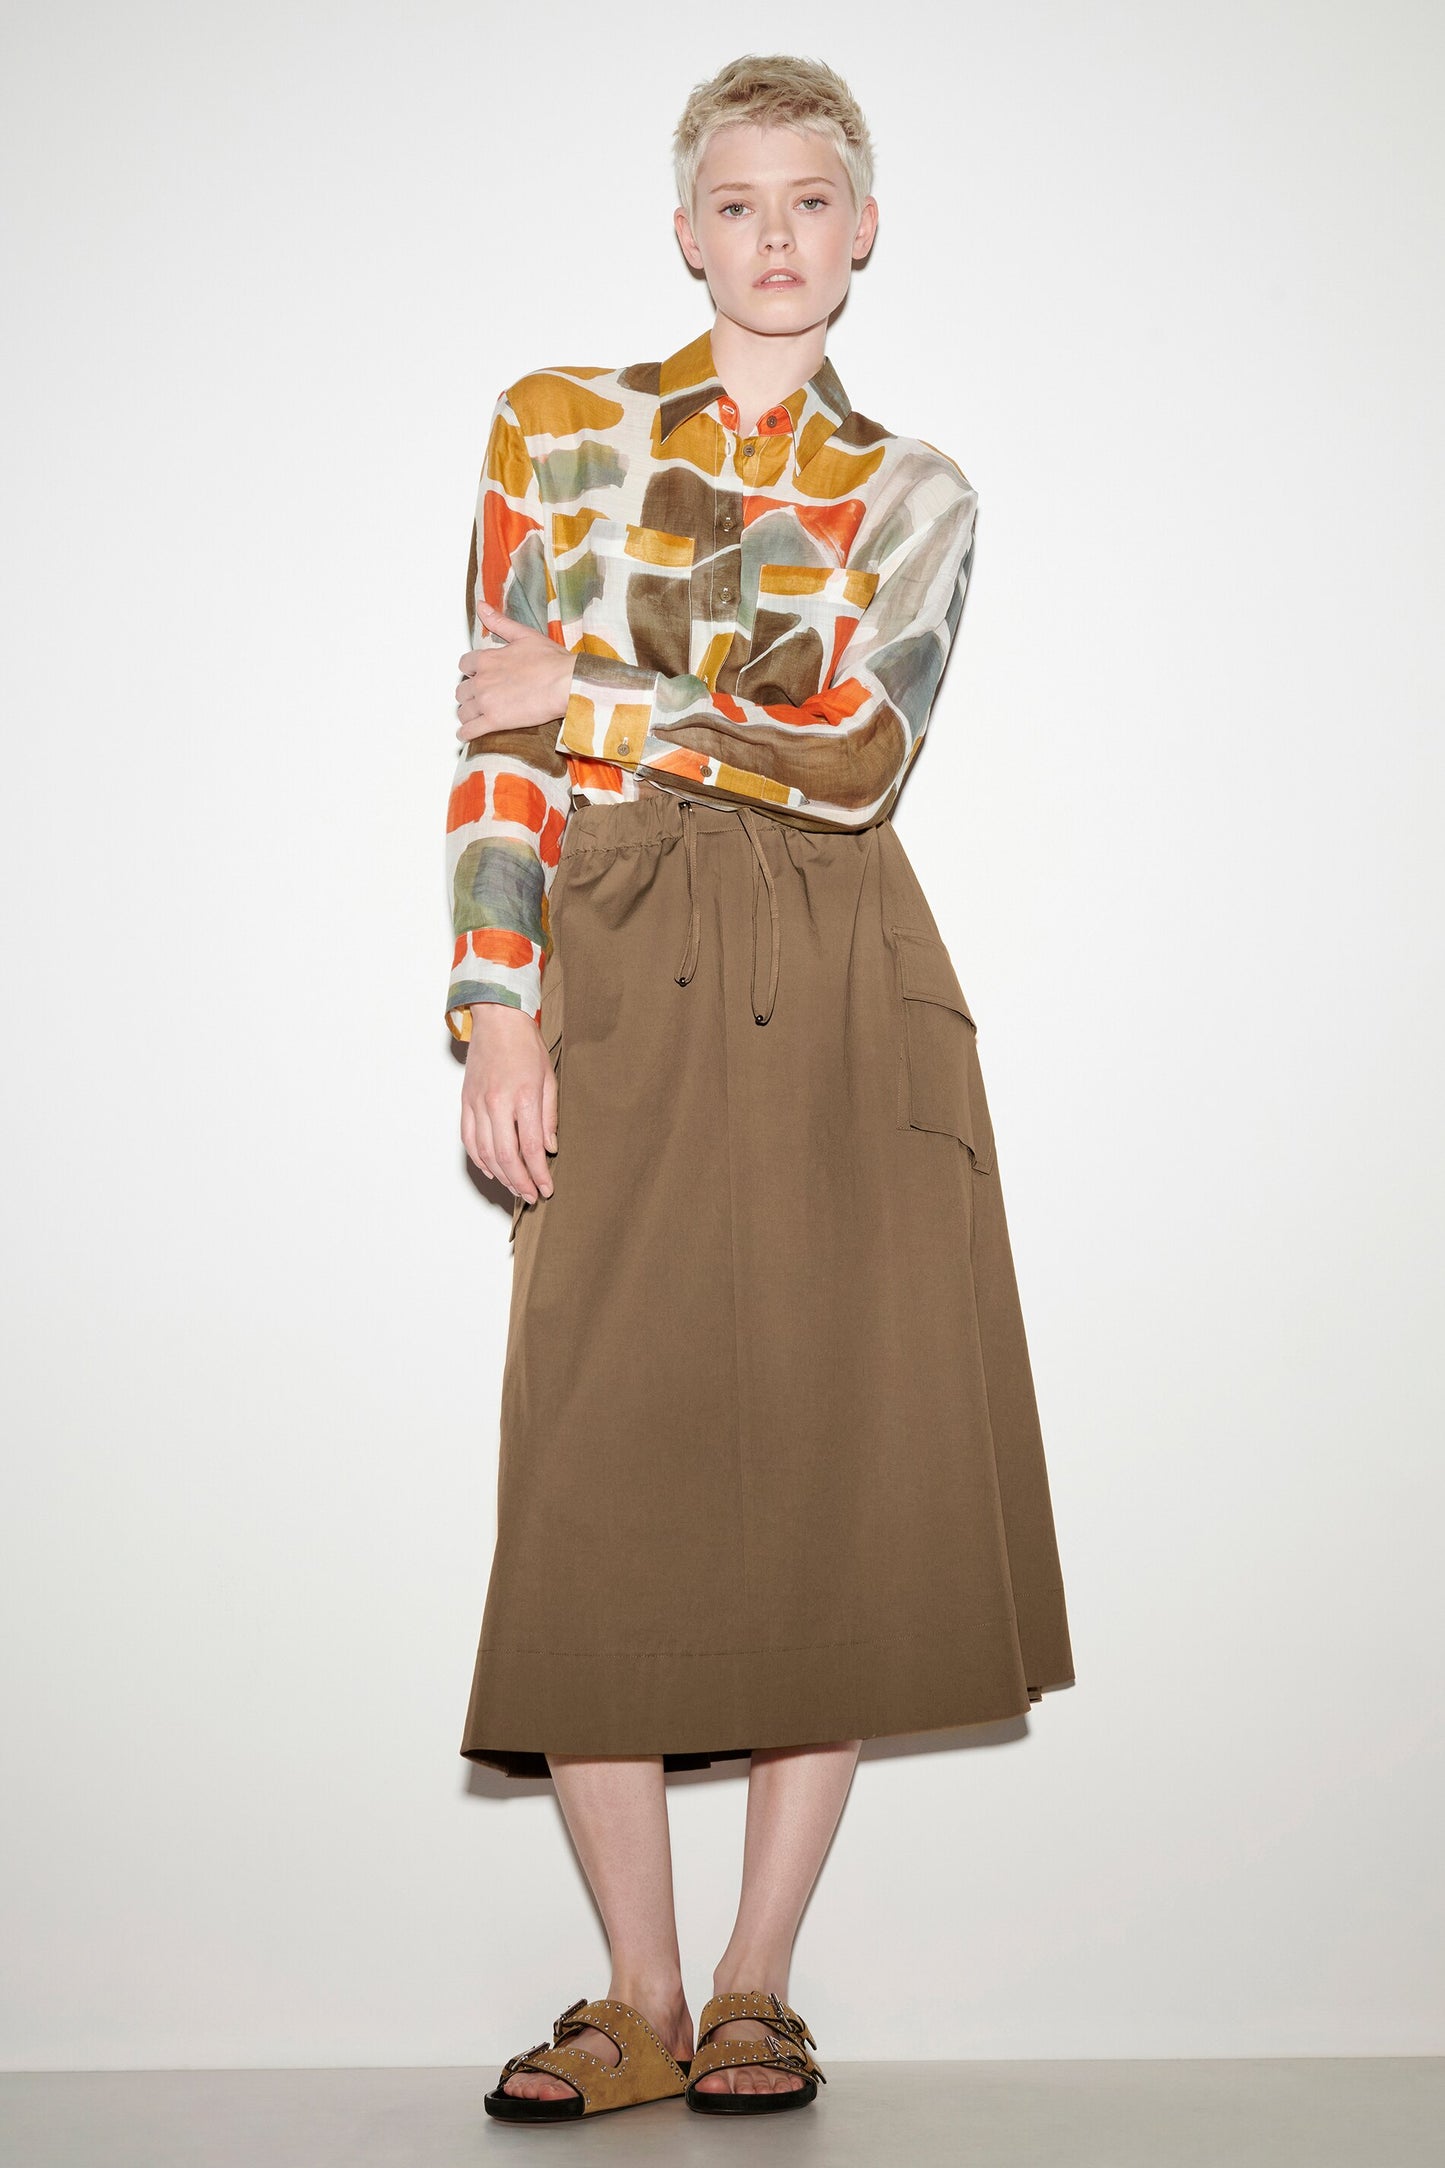 Cargo Style Godet Skirt